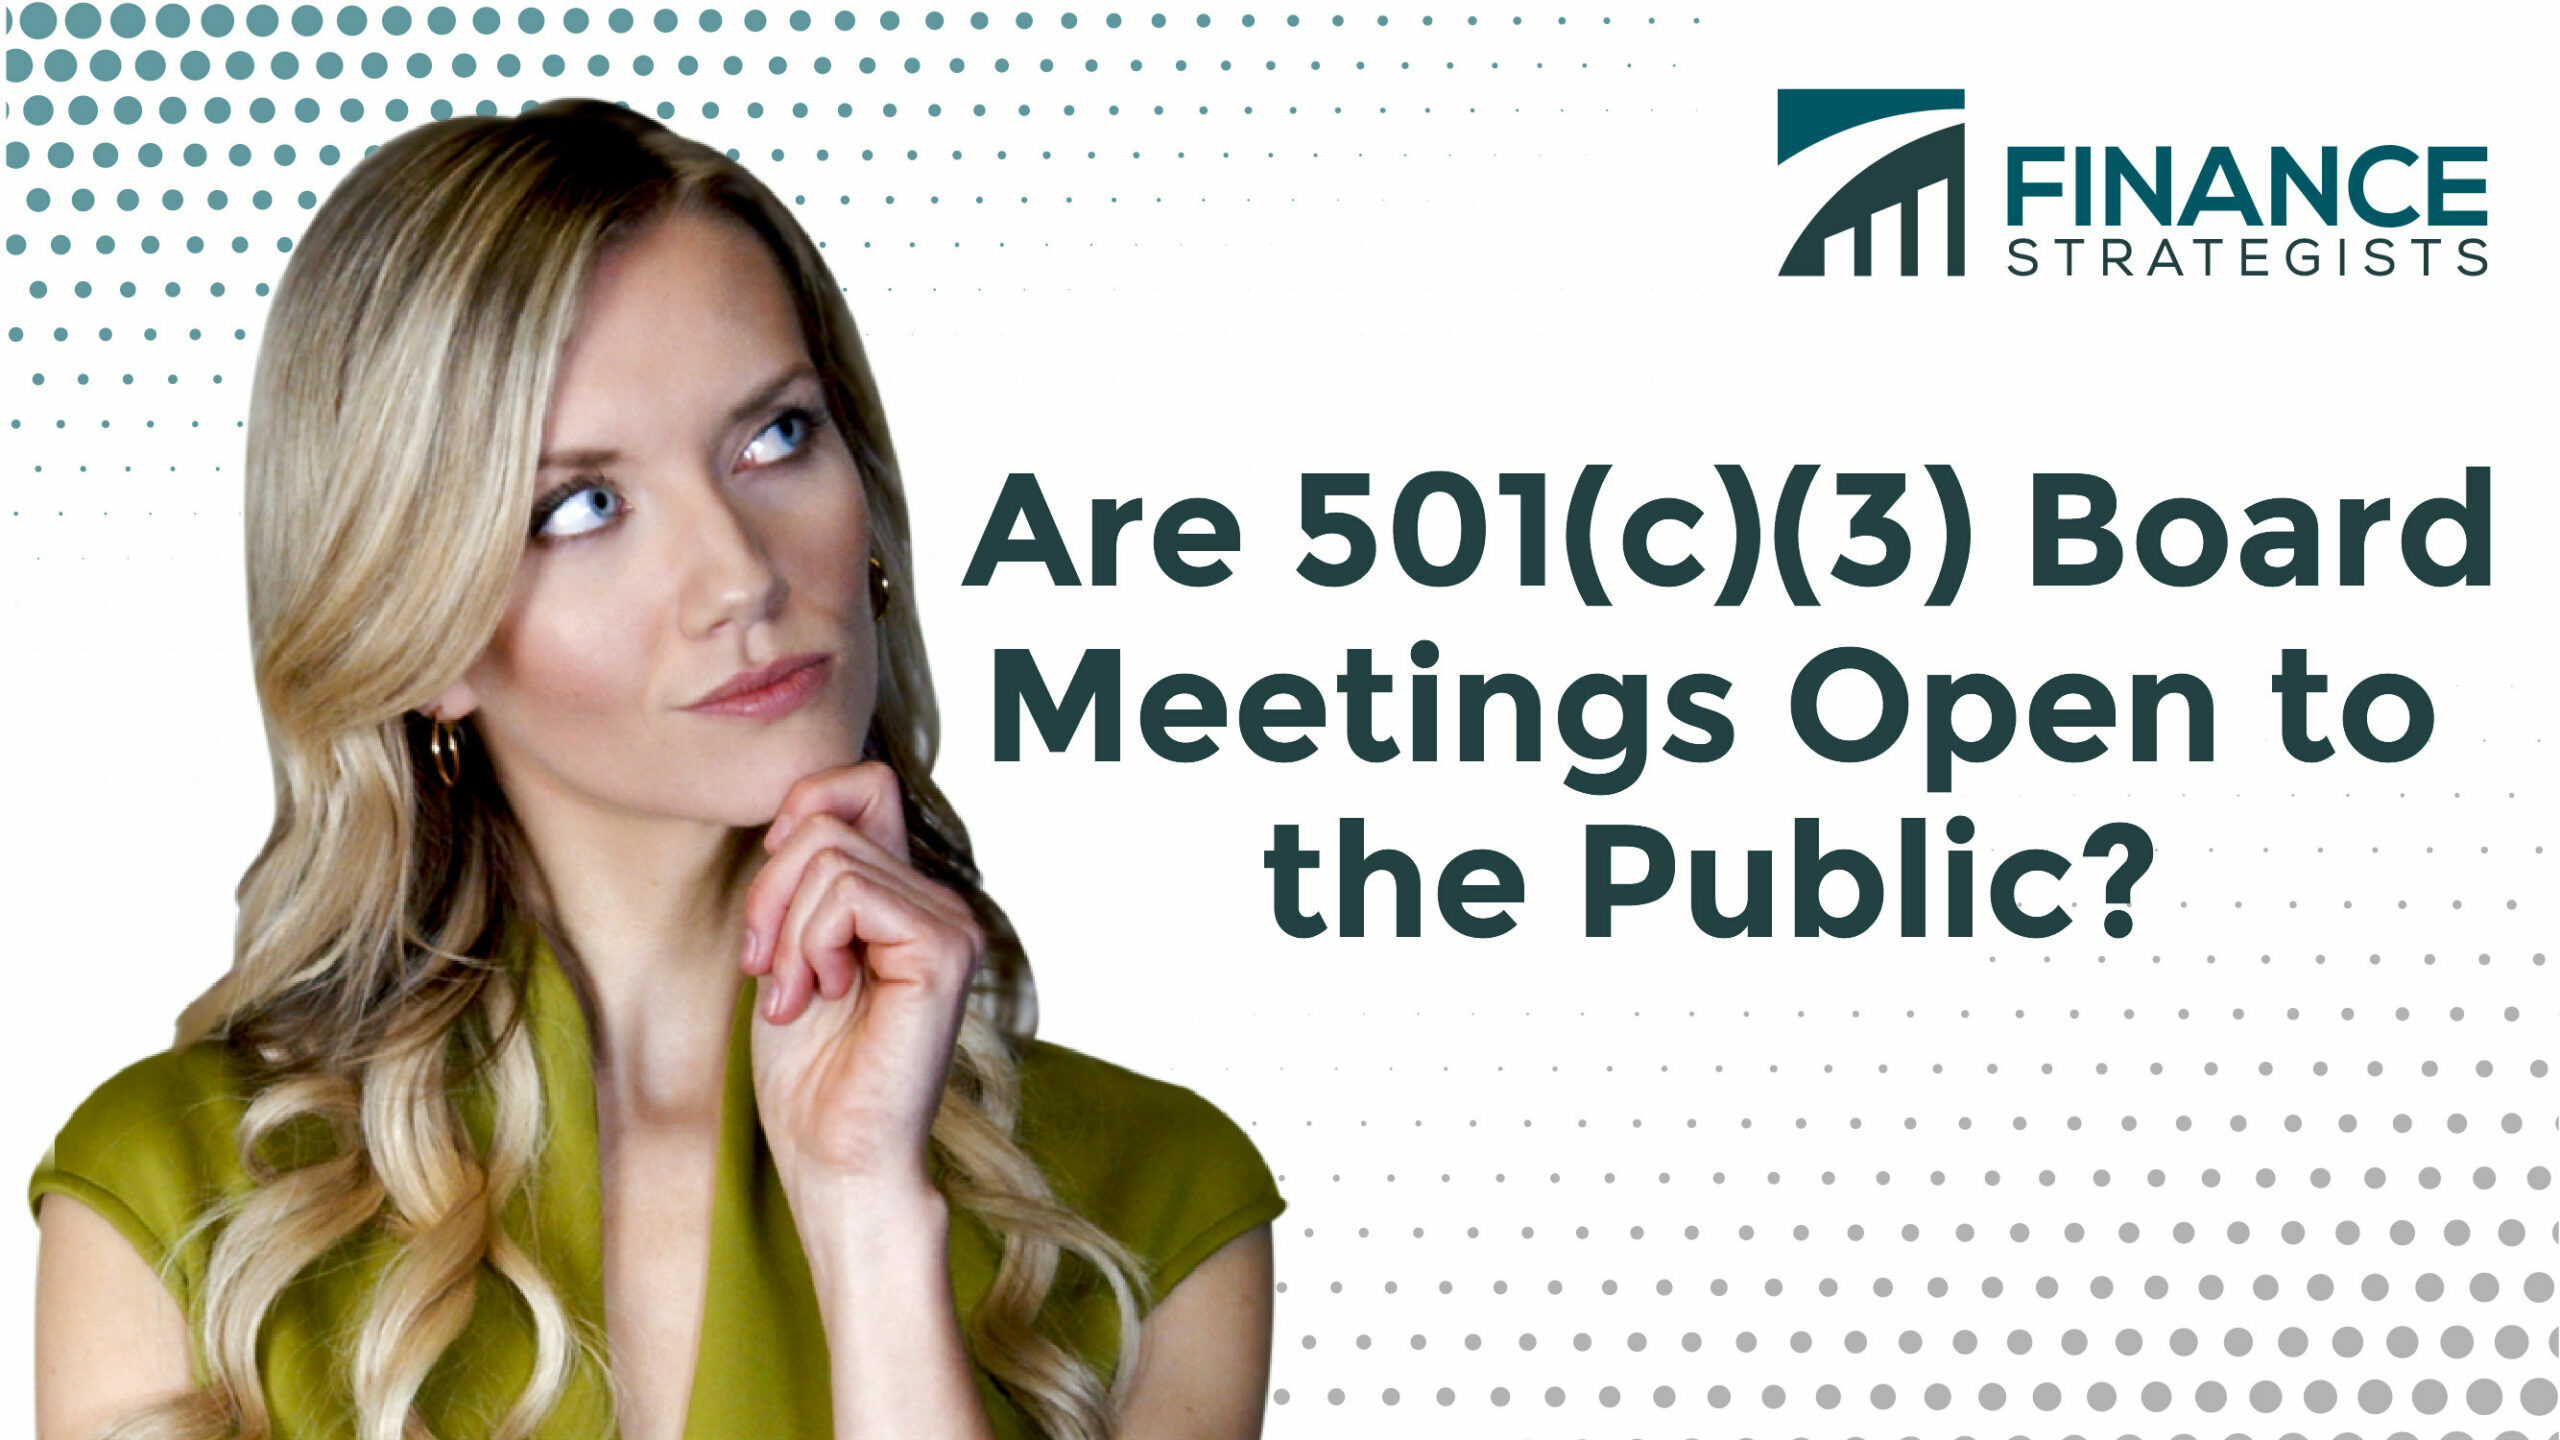 ¿Las reuniones de la junta 501(c)(3) están abiertas al público?